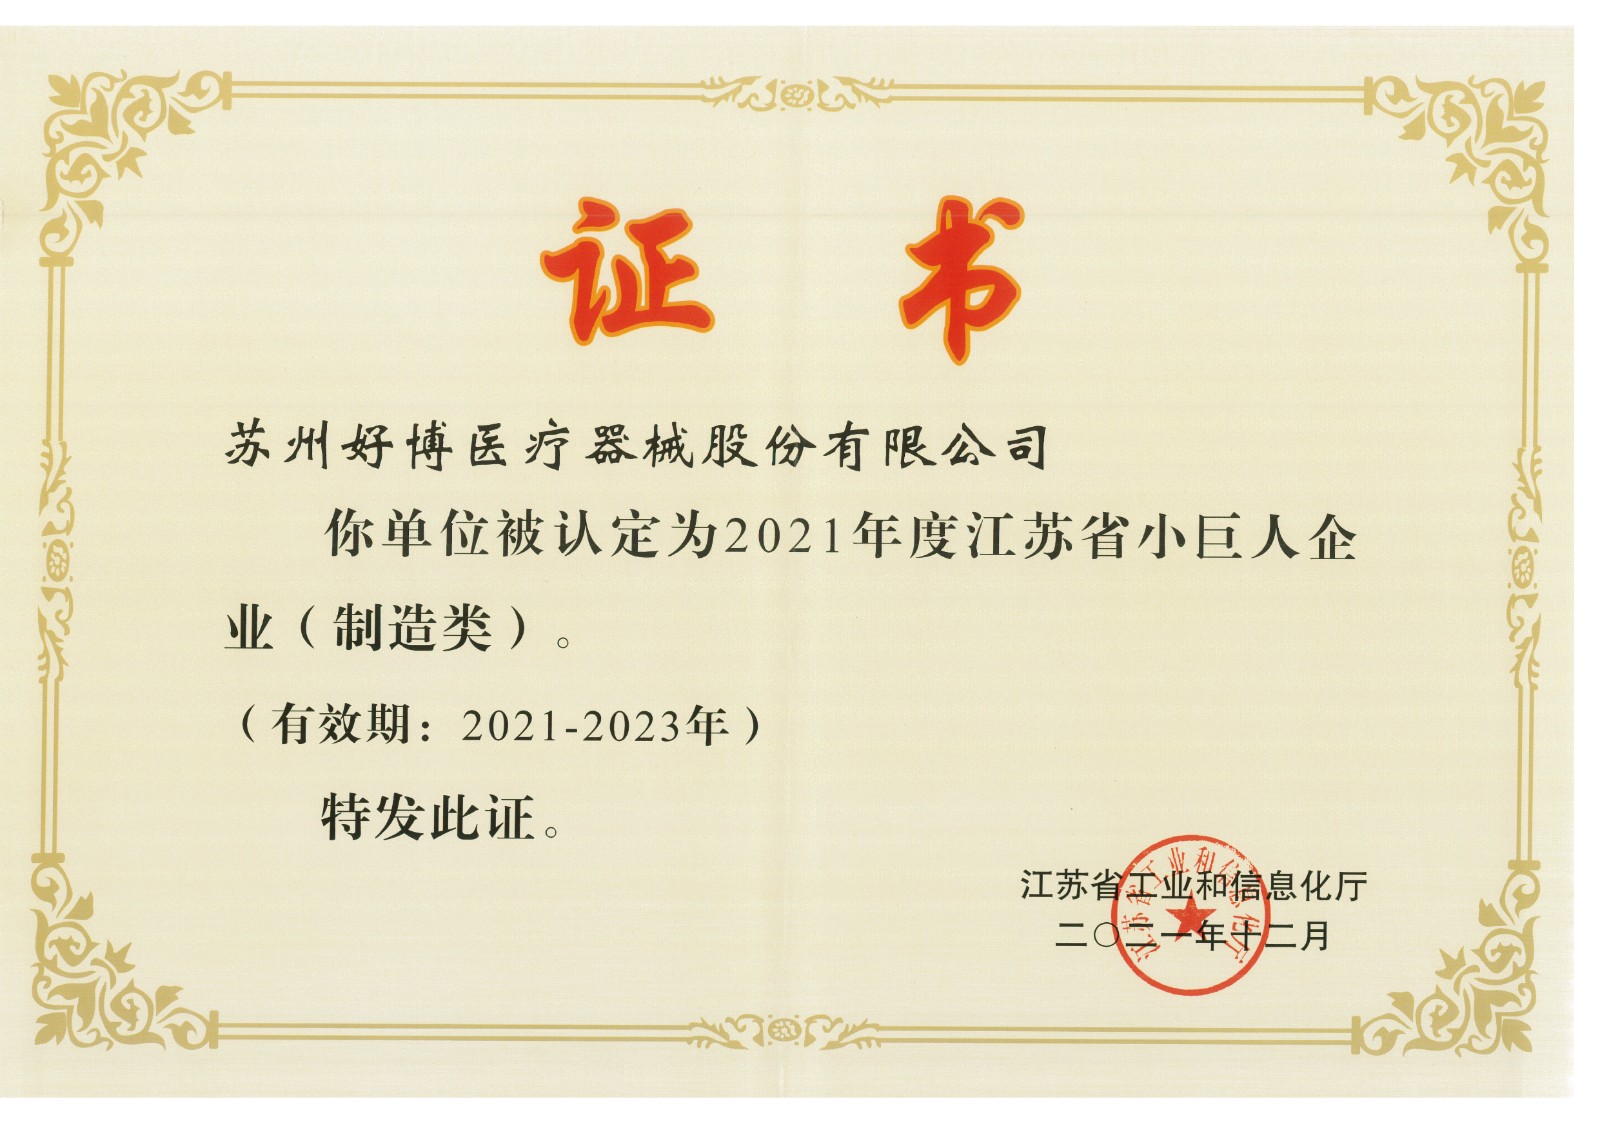 A-001-61 小巨人企業認證證書2021-2023.jpg